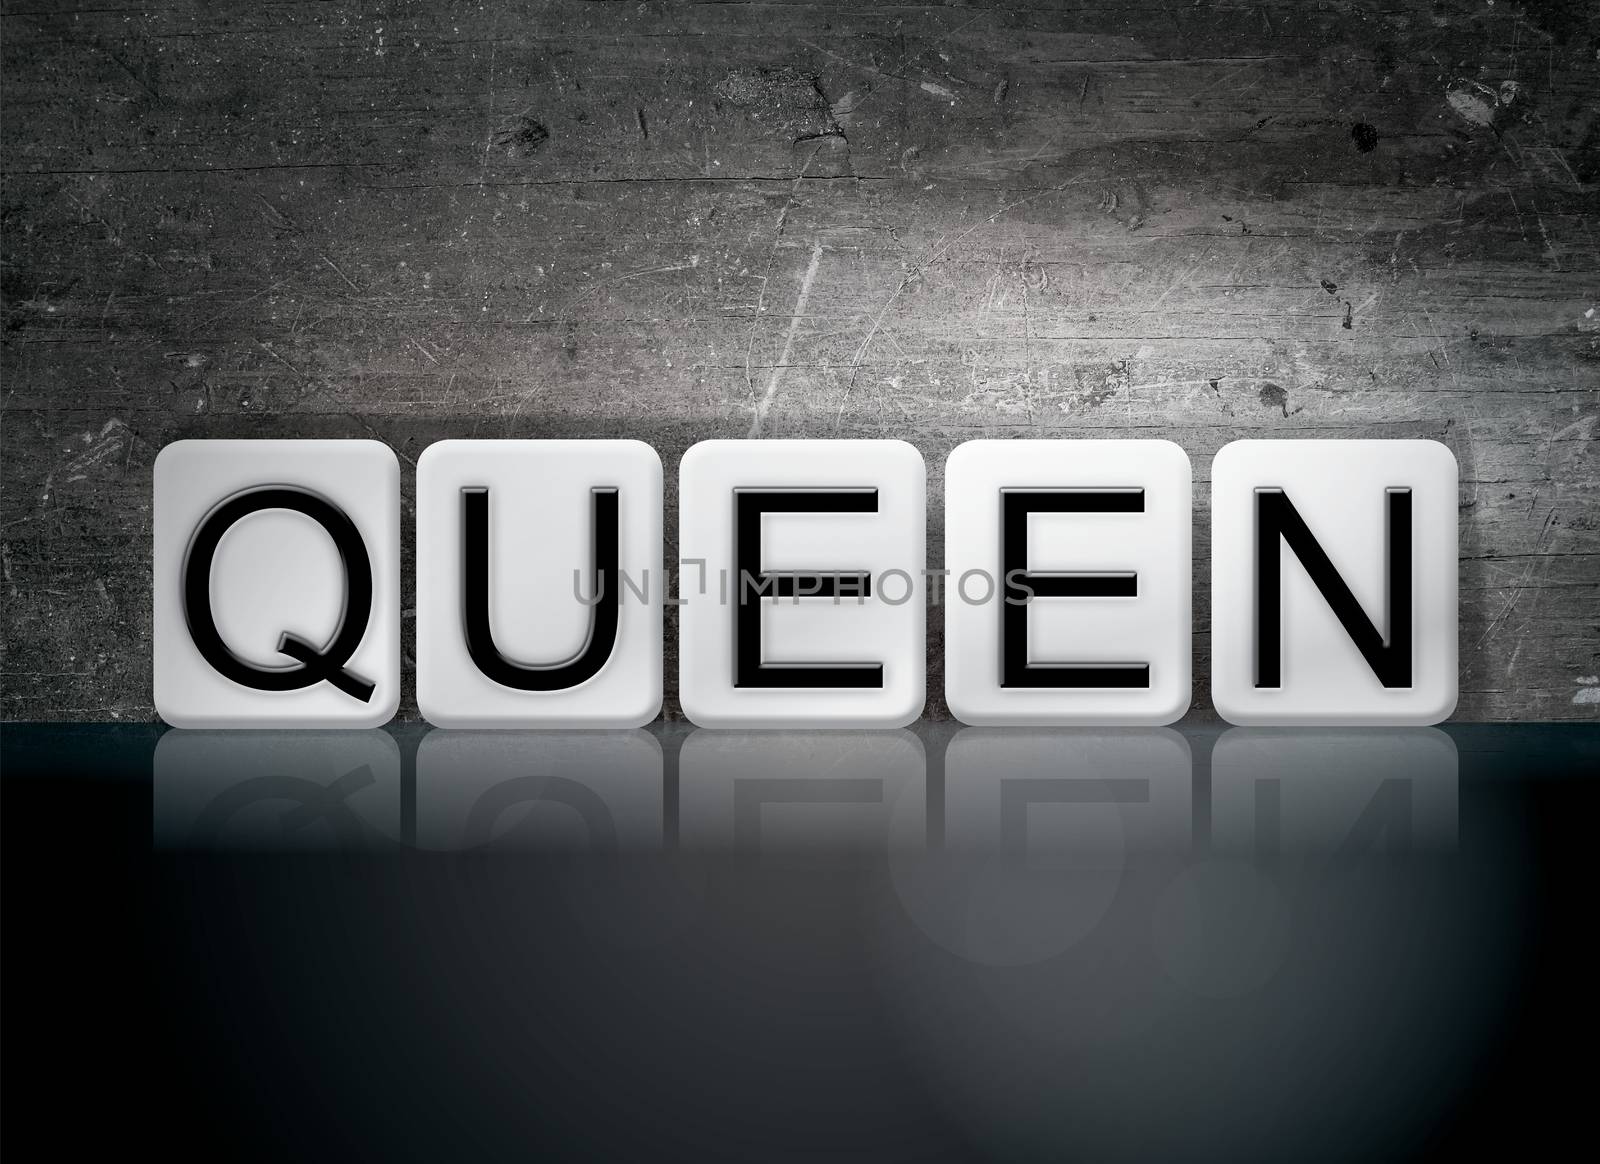 The word "Queen" written in white tiles against a dark vintage grunge background.